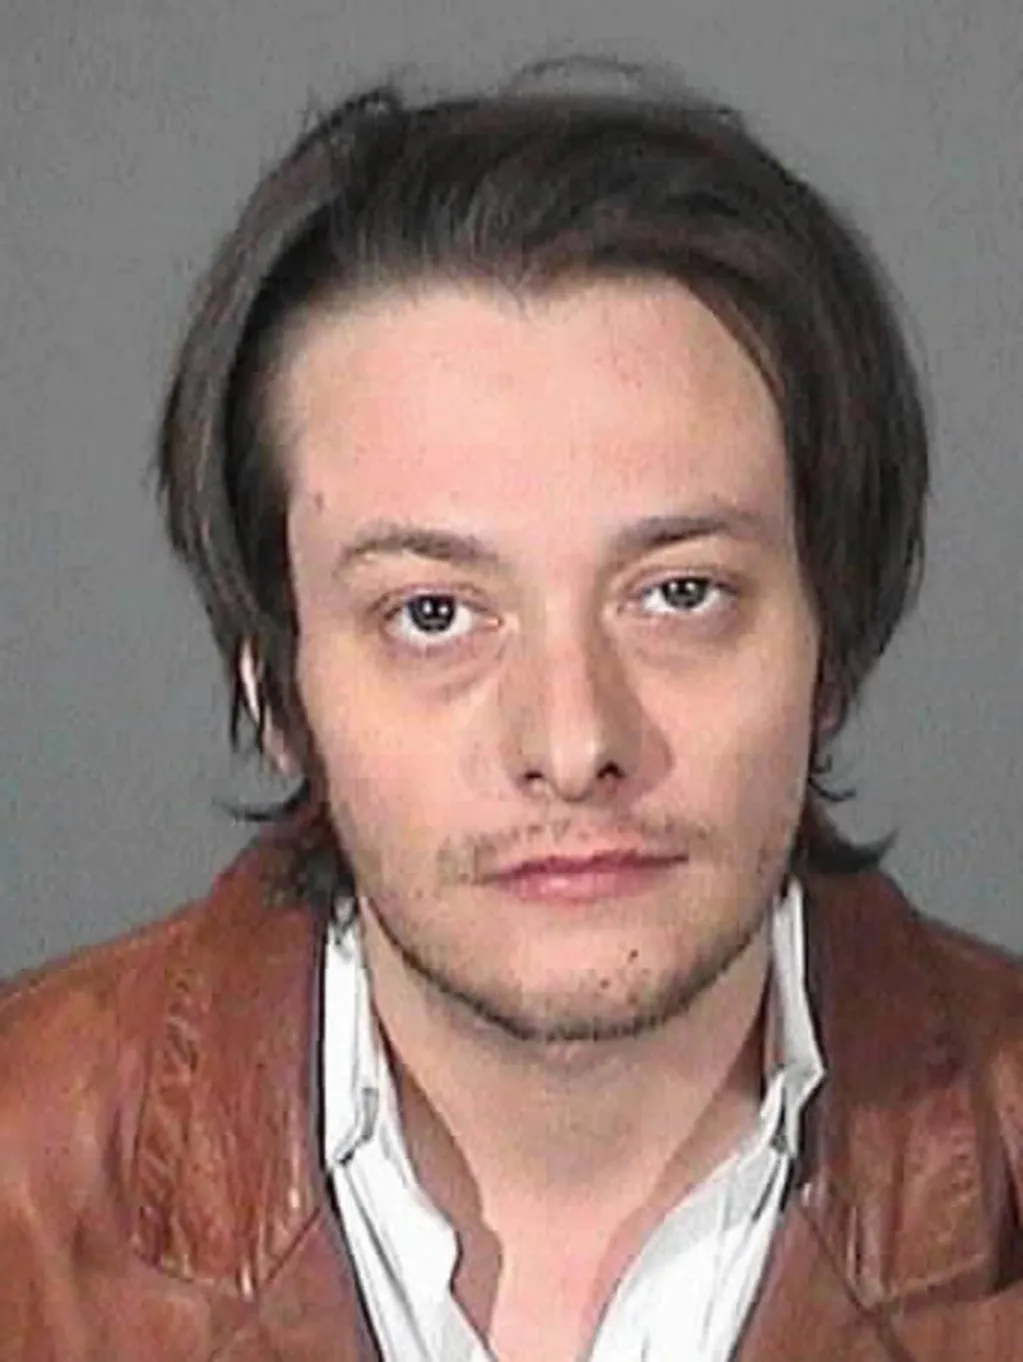 Edward Furlong arrestado por presunta violencia doméstica en Los Ángeles en enero de 2013